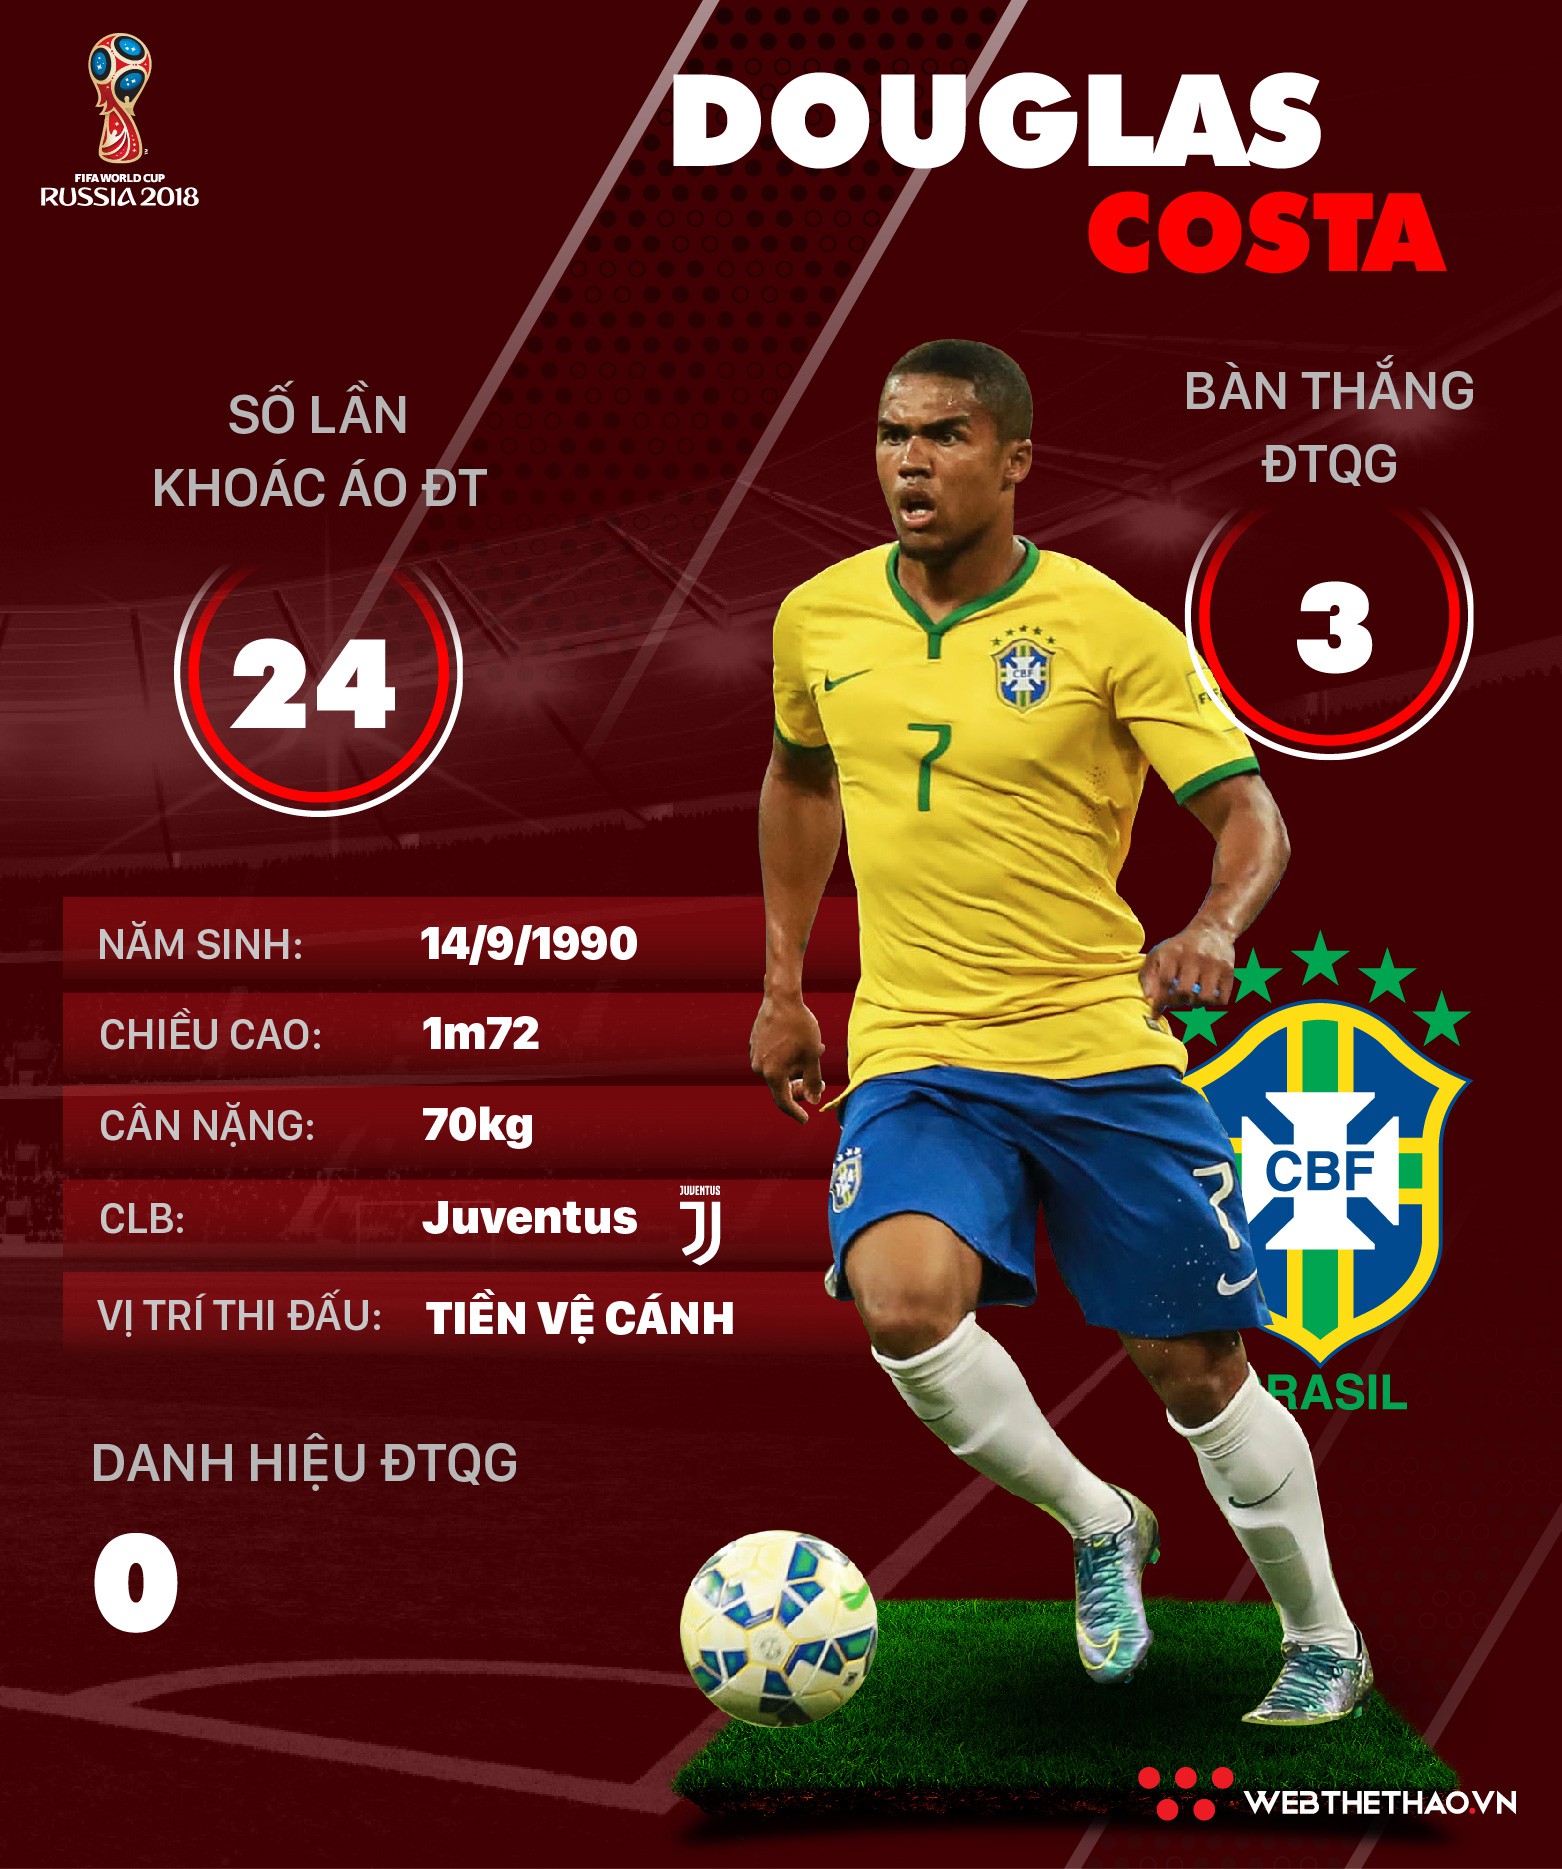 Thông tin cầu thủ Douglas Costa của ĐT Brazil dự World Cup 2018